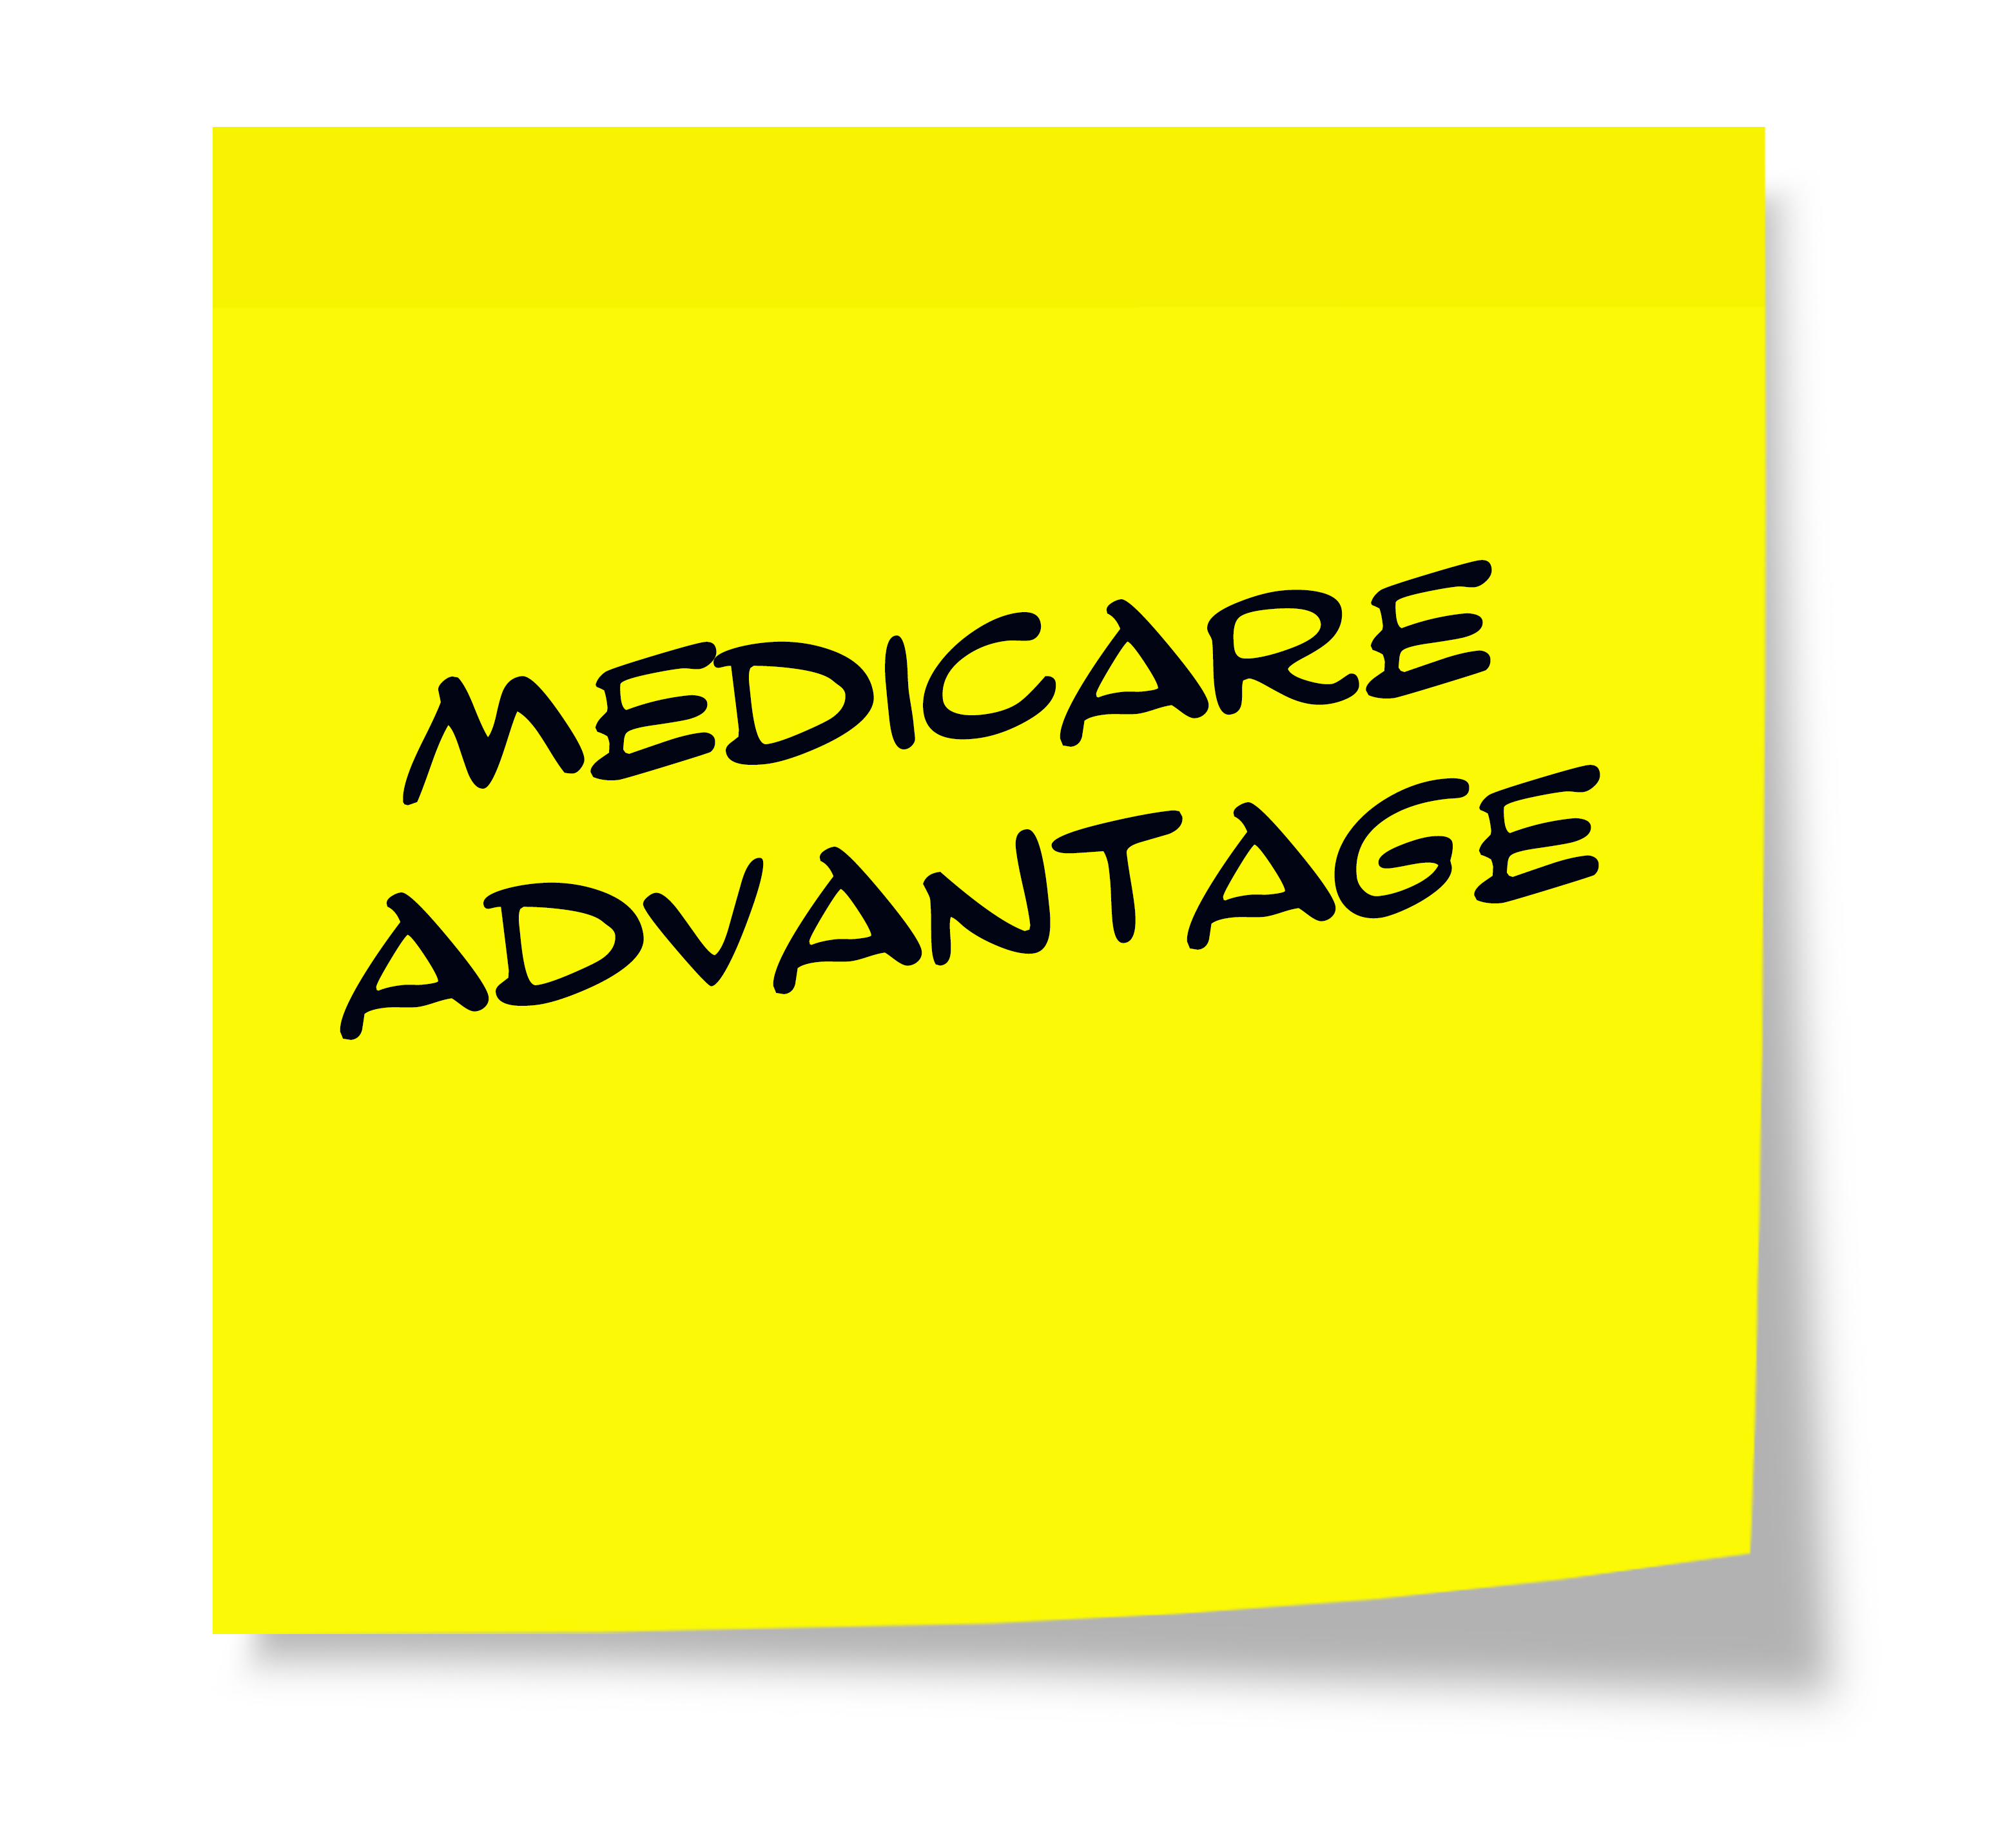 Preguntas Frecuentes: ¿Cuál es la diferencia entre Medicare Advantage y Plan Medicare Supplement?